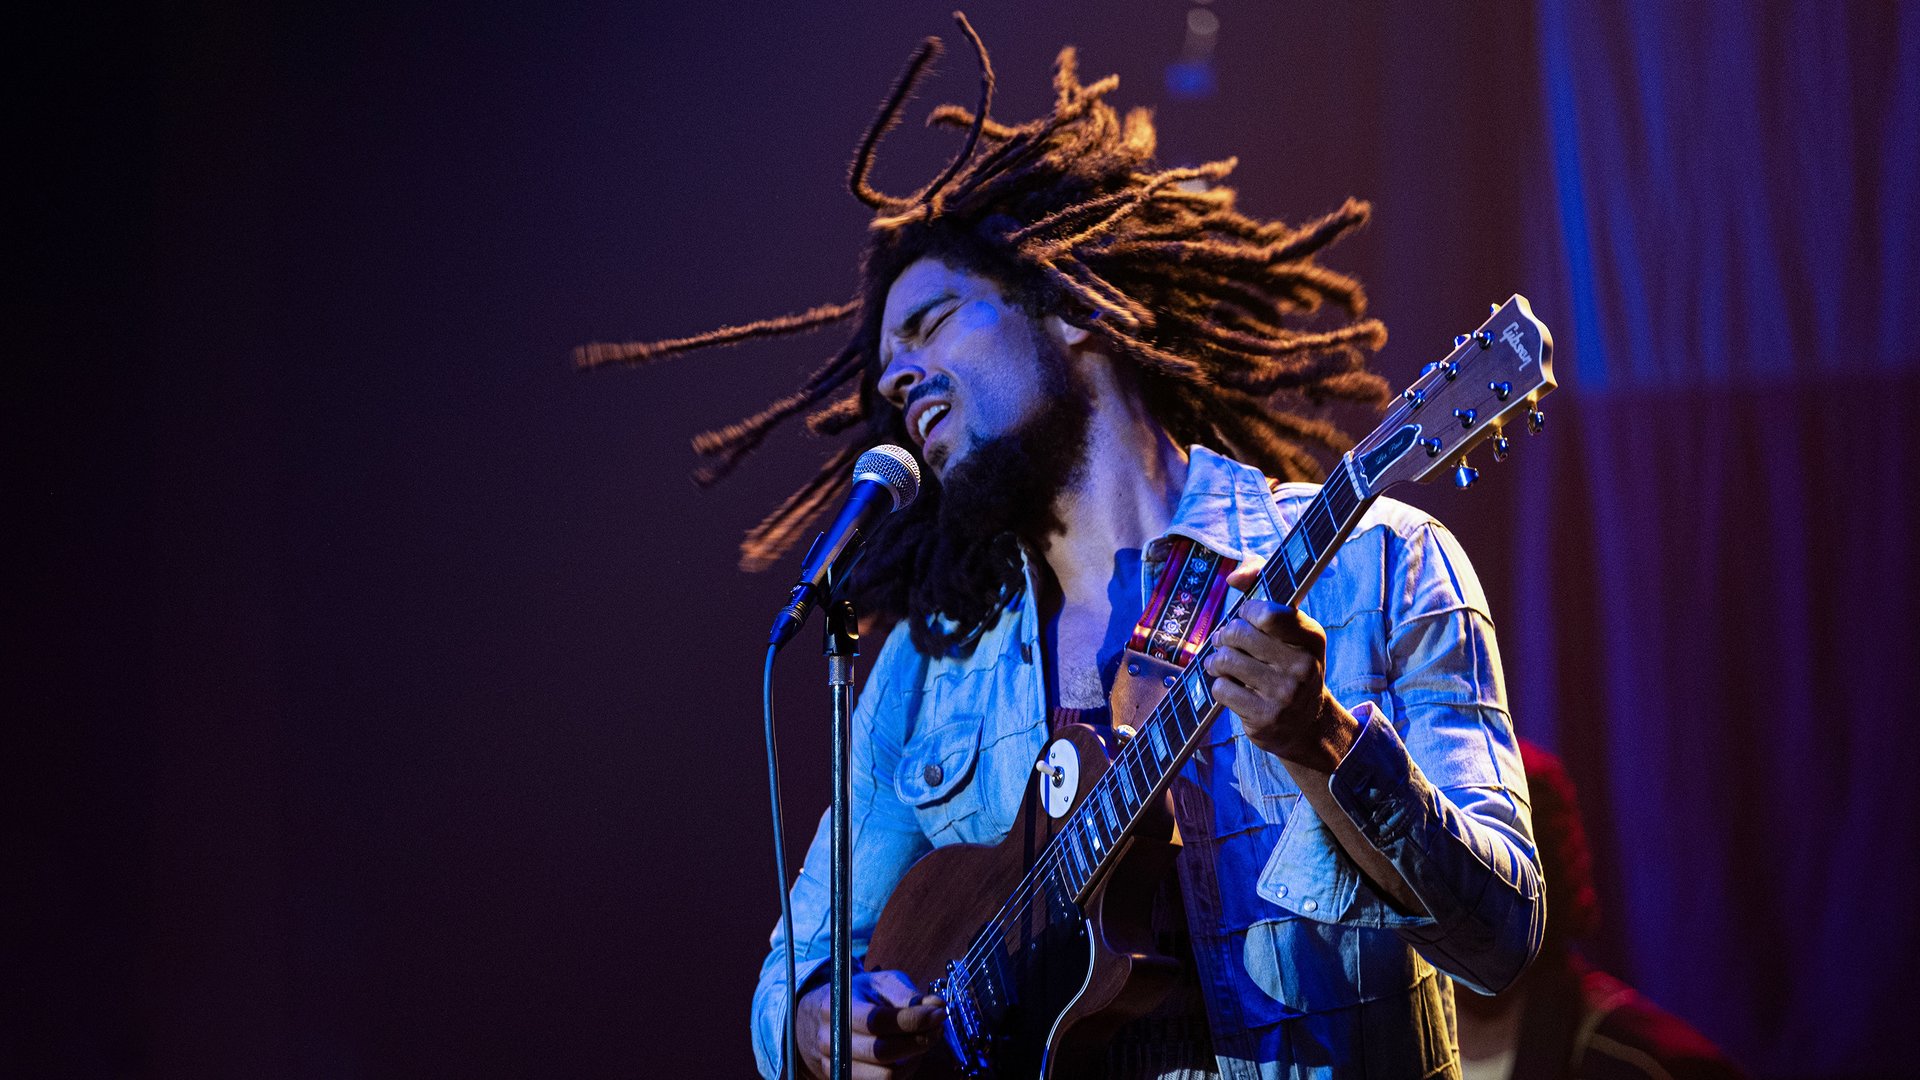 #Botschaft der Musiklegende Bob Marley erfüllt den neuen Trailer zum Biopic